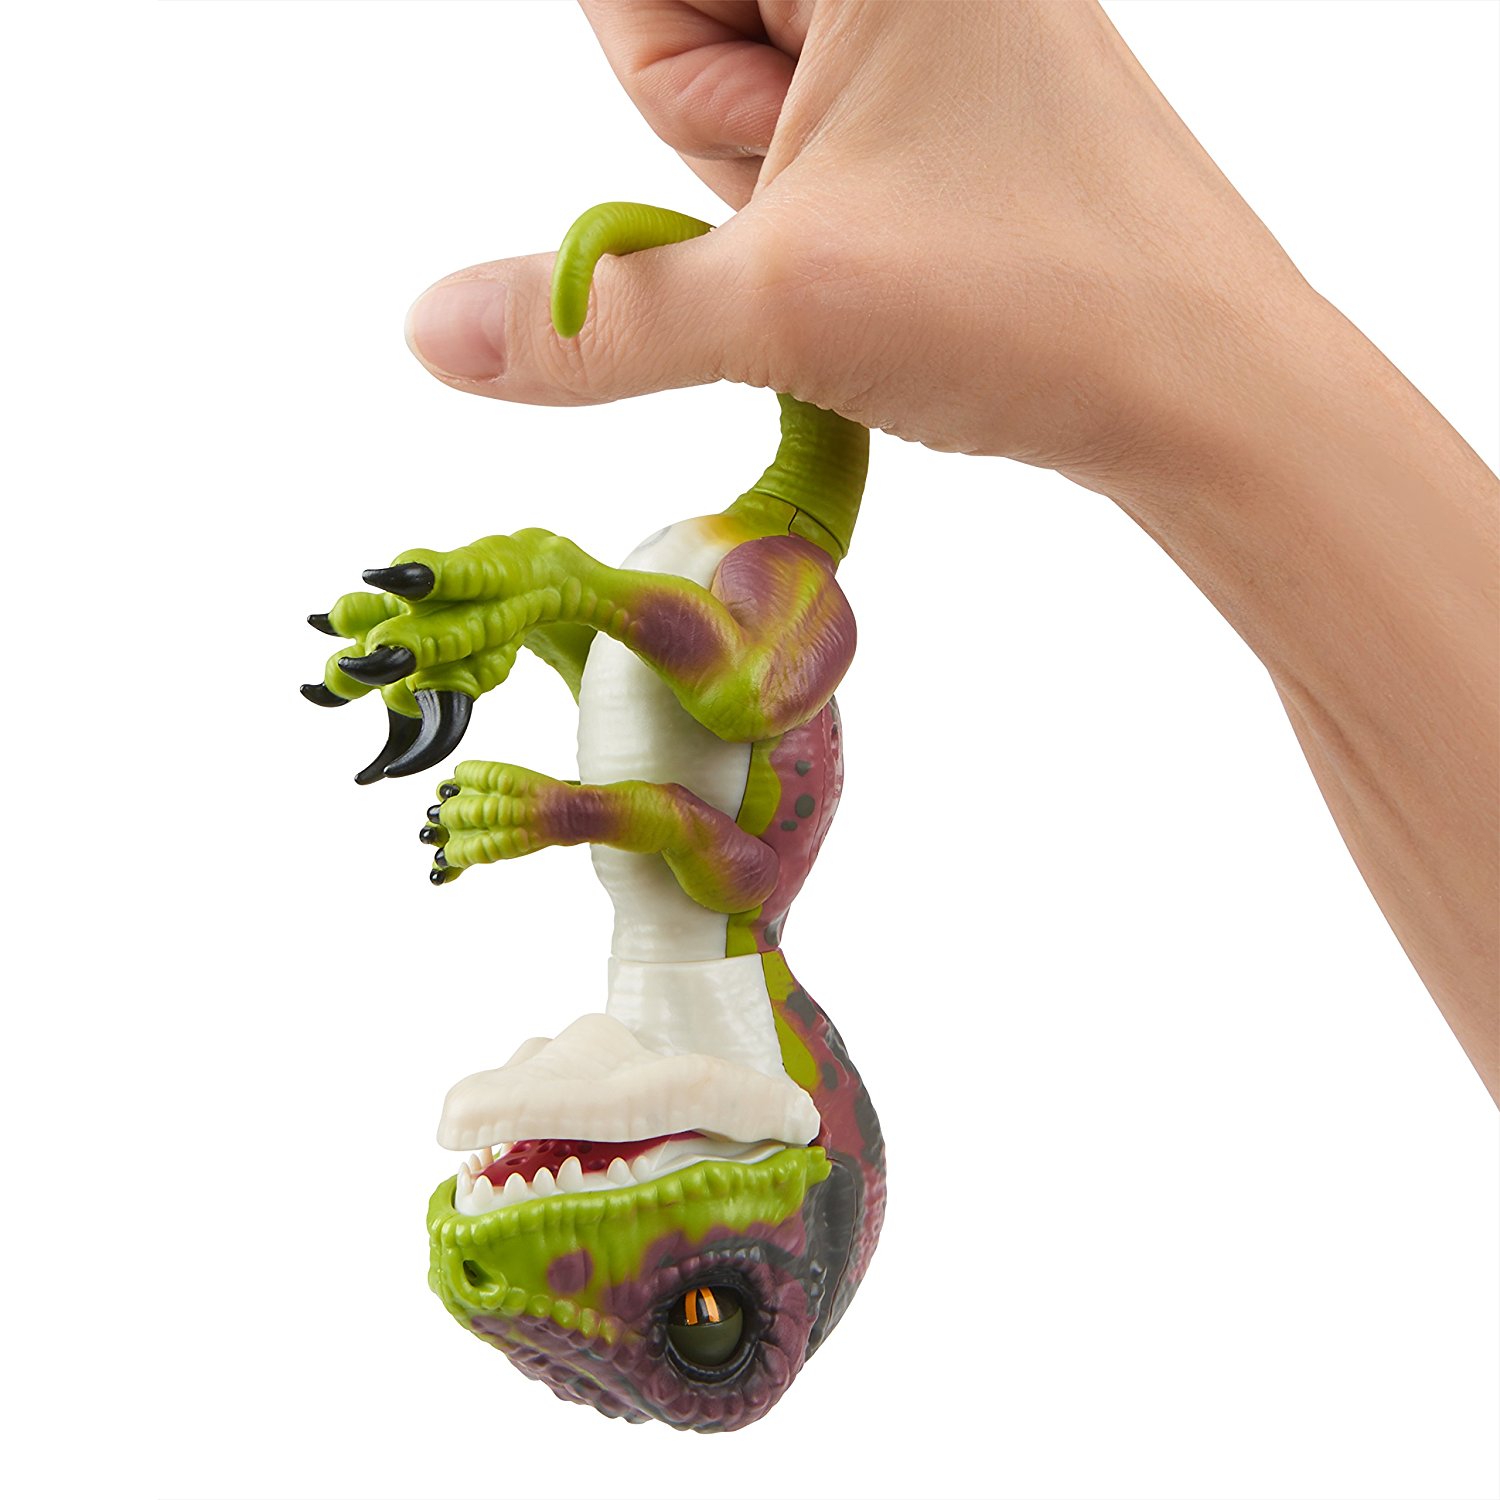 Интерактивный динозавр Fingerlings – Стелс, зеленый с фиолетовым, 12 см, звук  